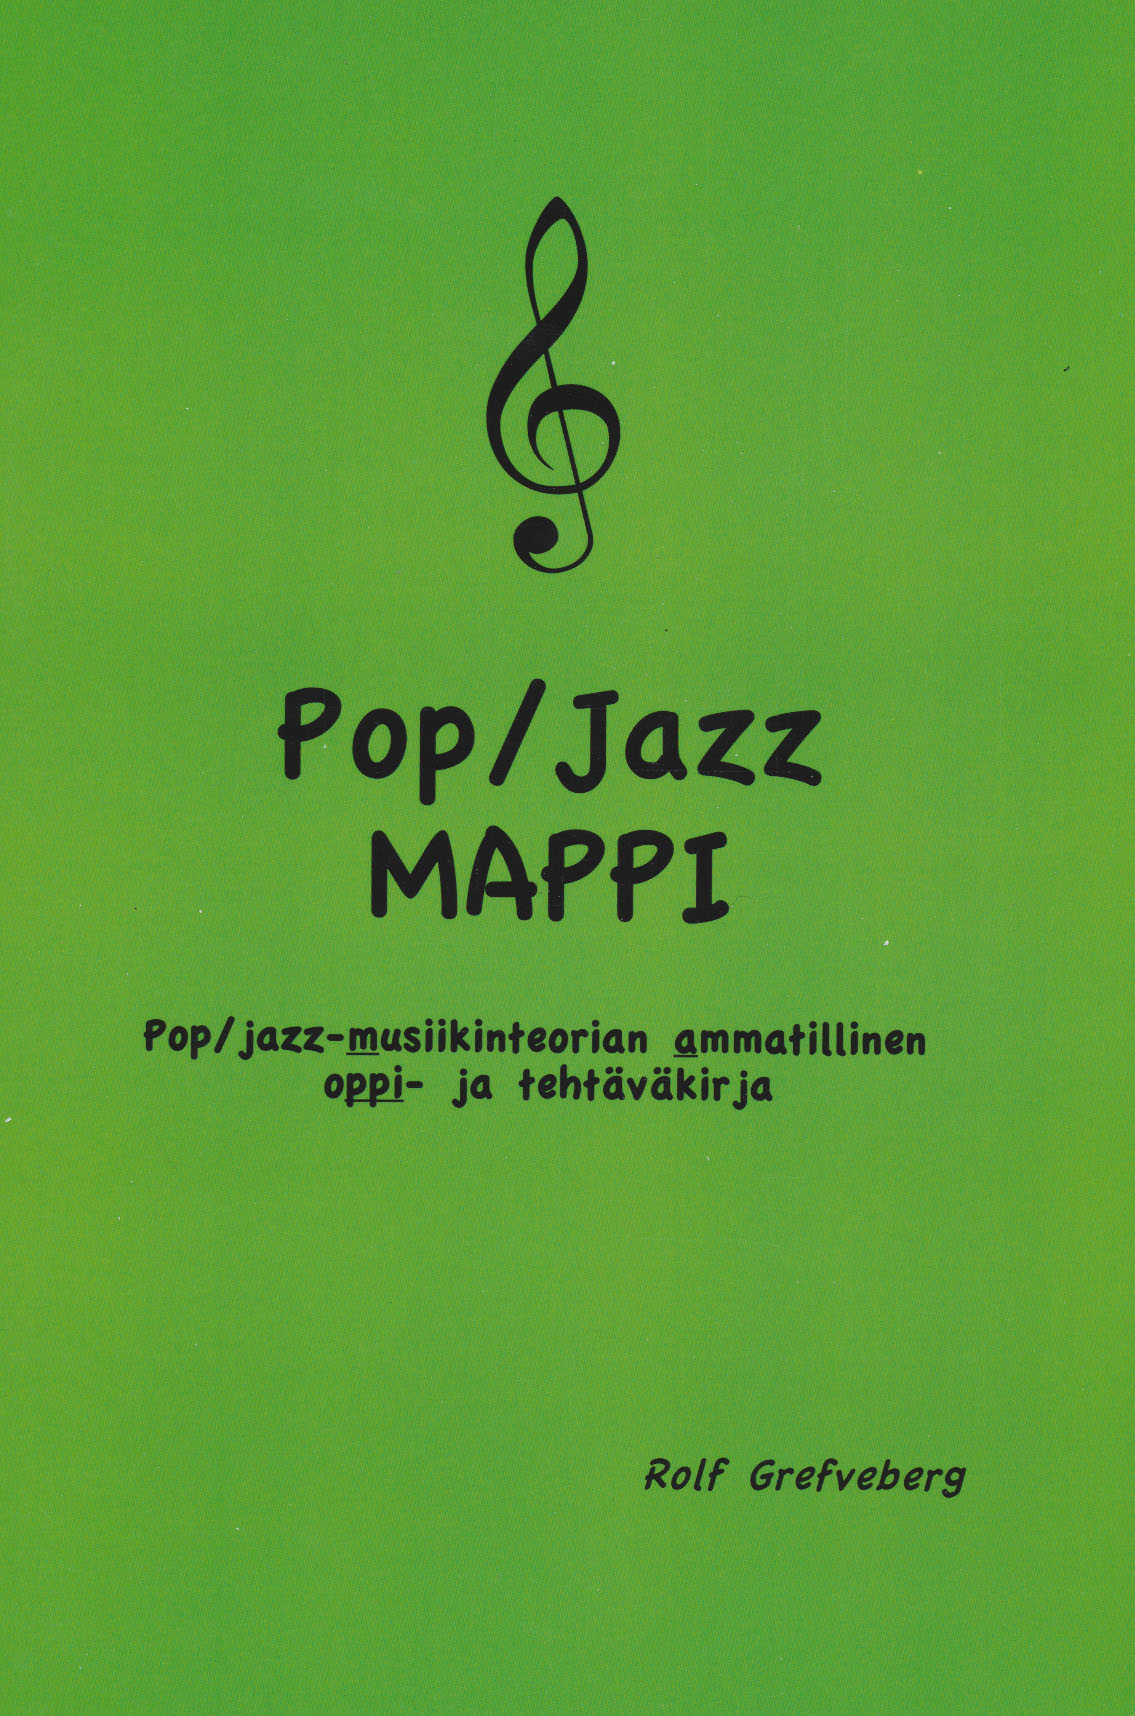 Pop/Jazz Mappi - Pop/jazz-musiikinteorian ammatillinen oppi- ja tehtäväkirja